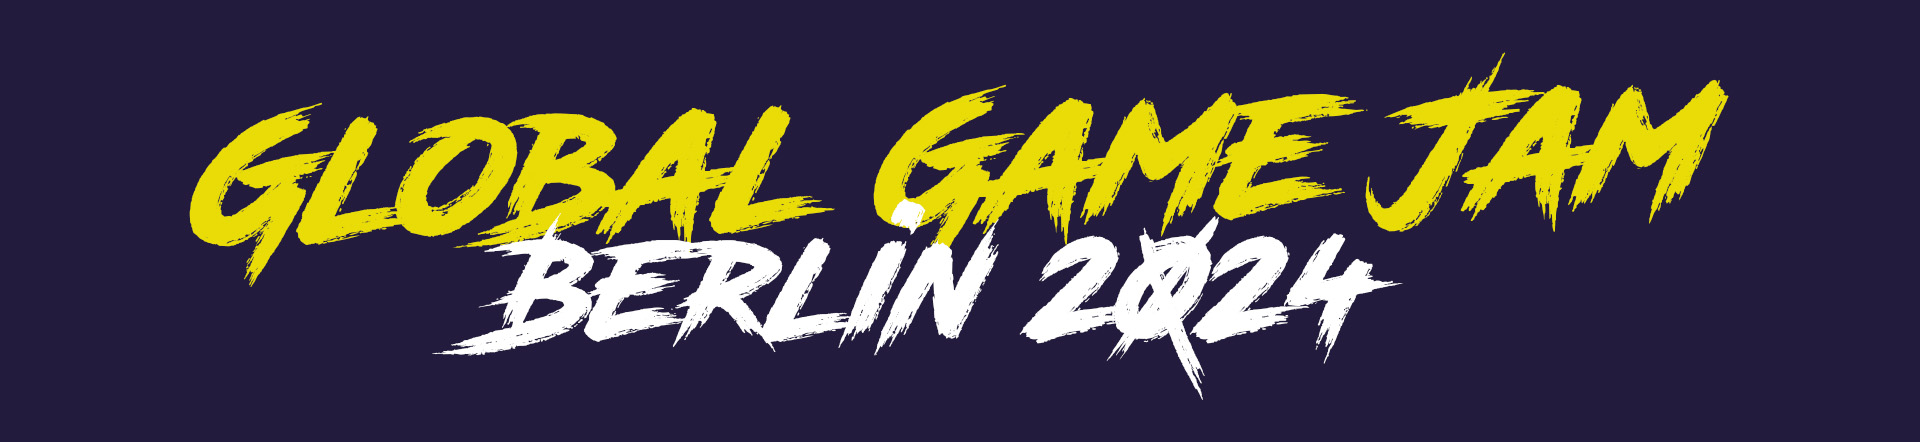 Global Game Jam Berlin Banner